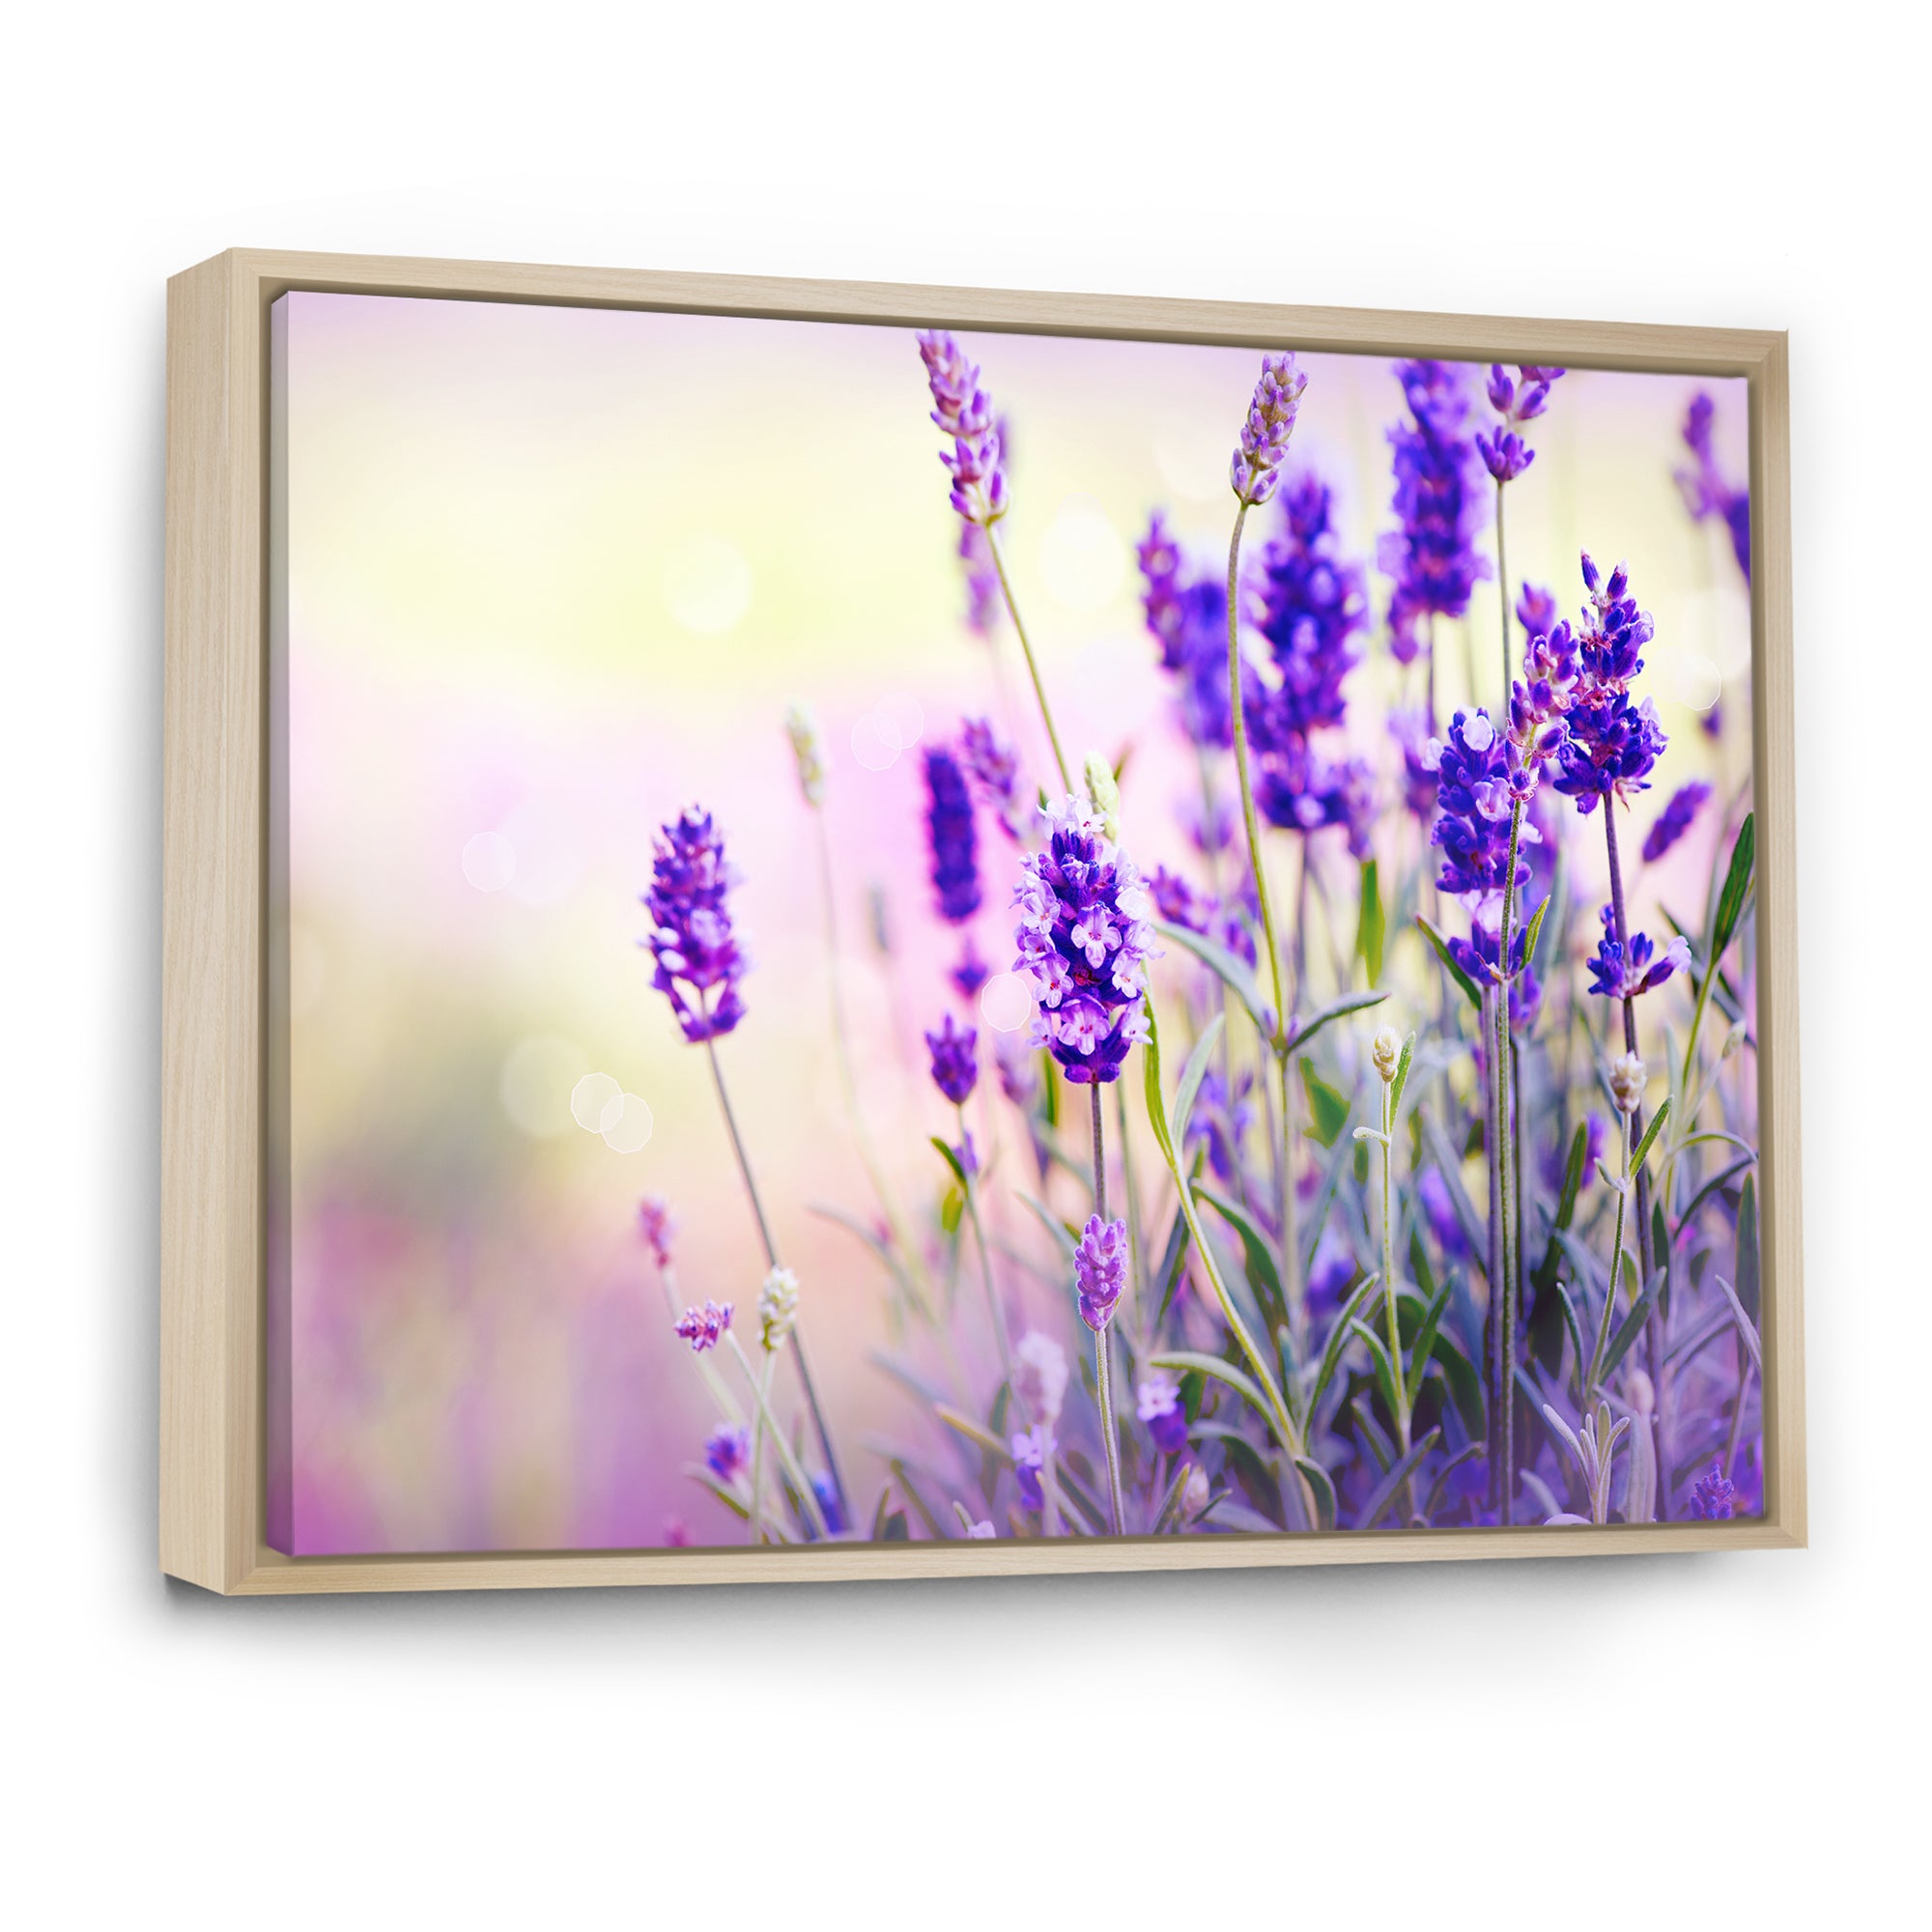 Purple Lavender Field